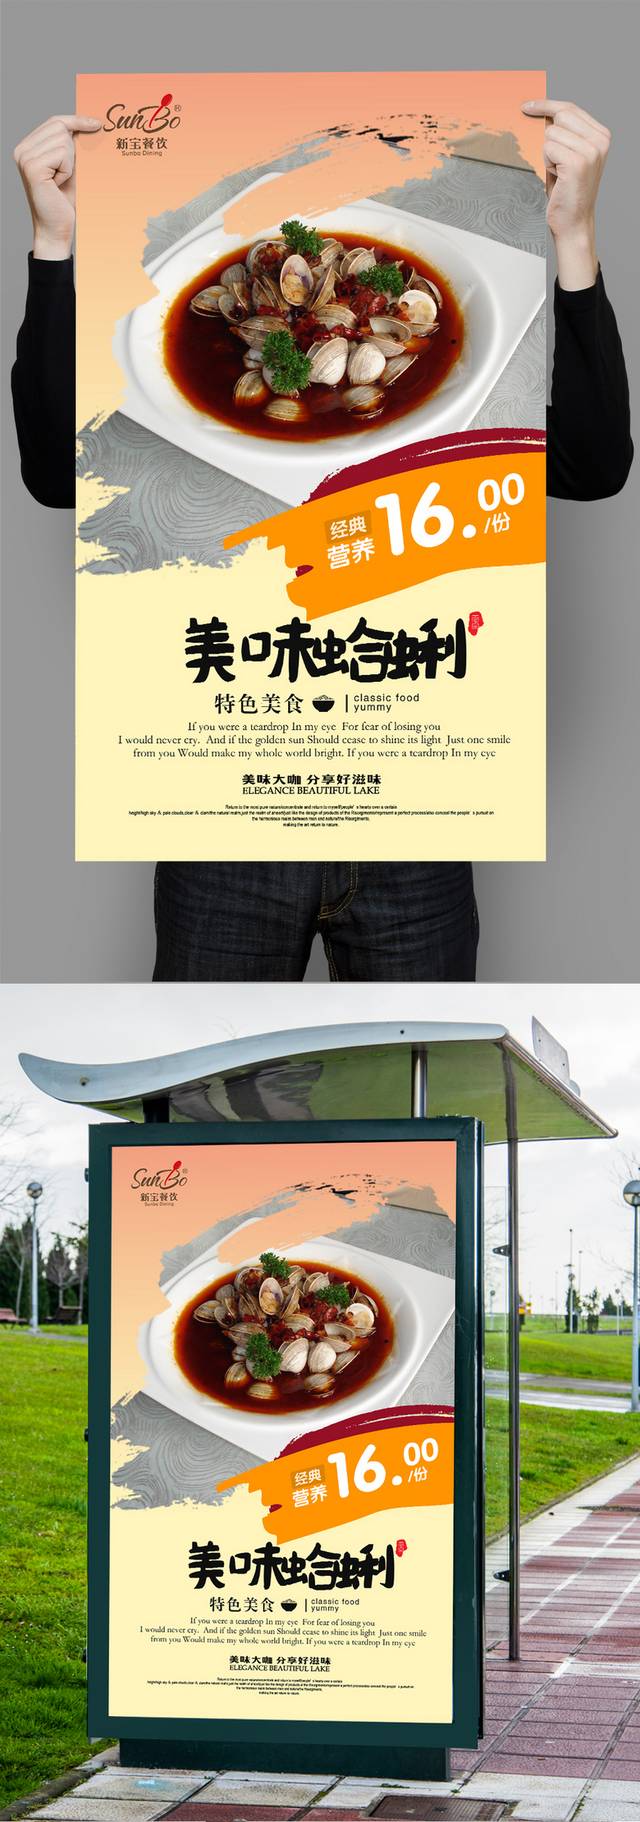 经典高清蛤蜊宣传海报设计模板psd